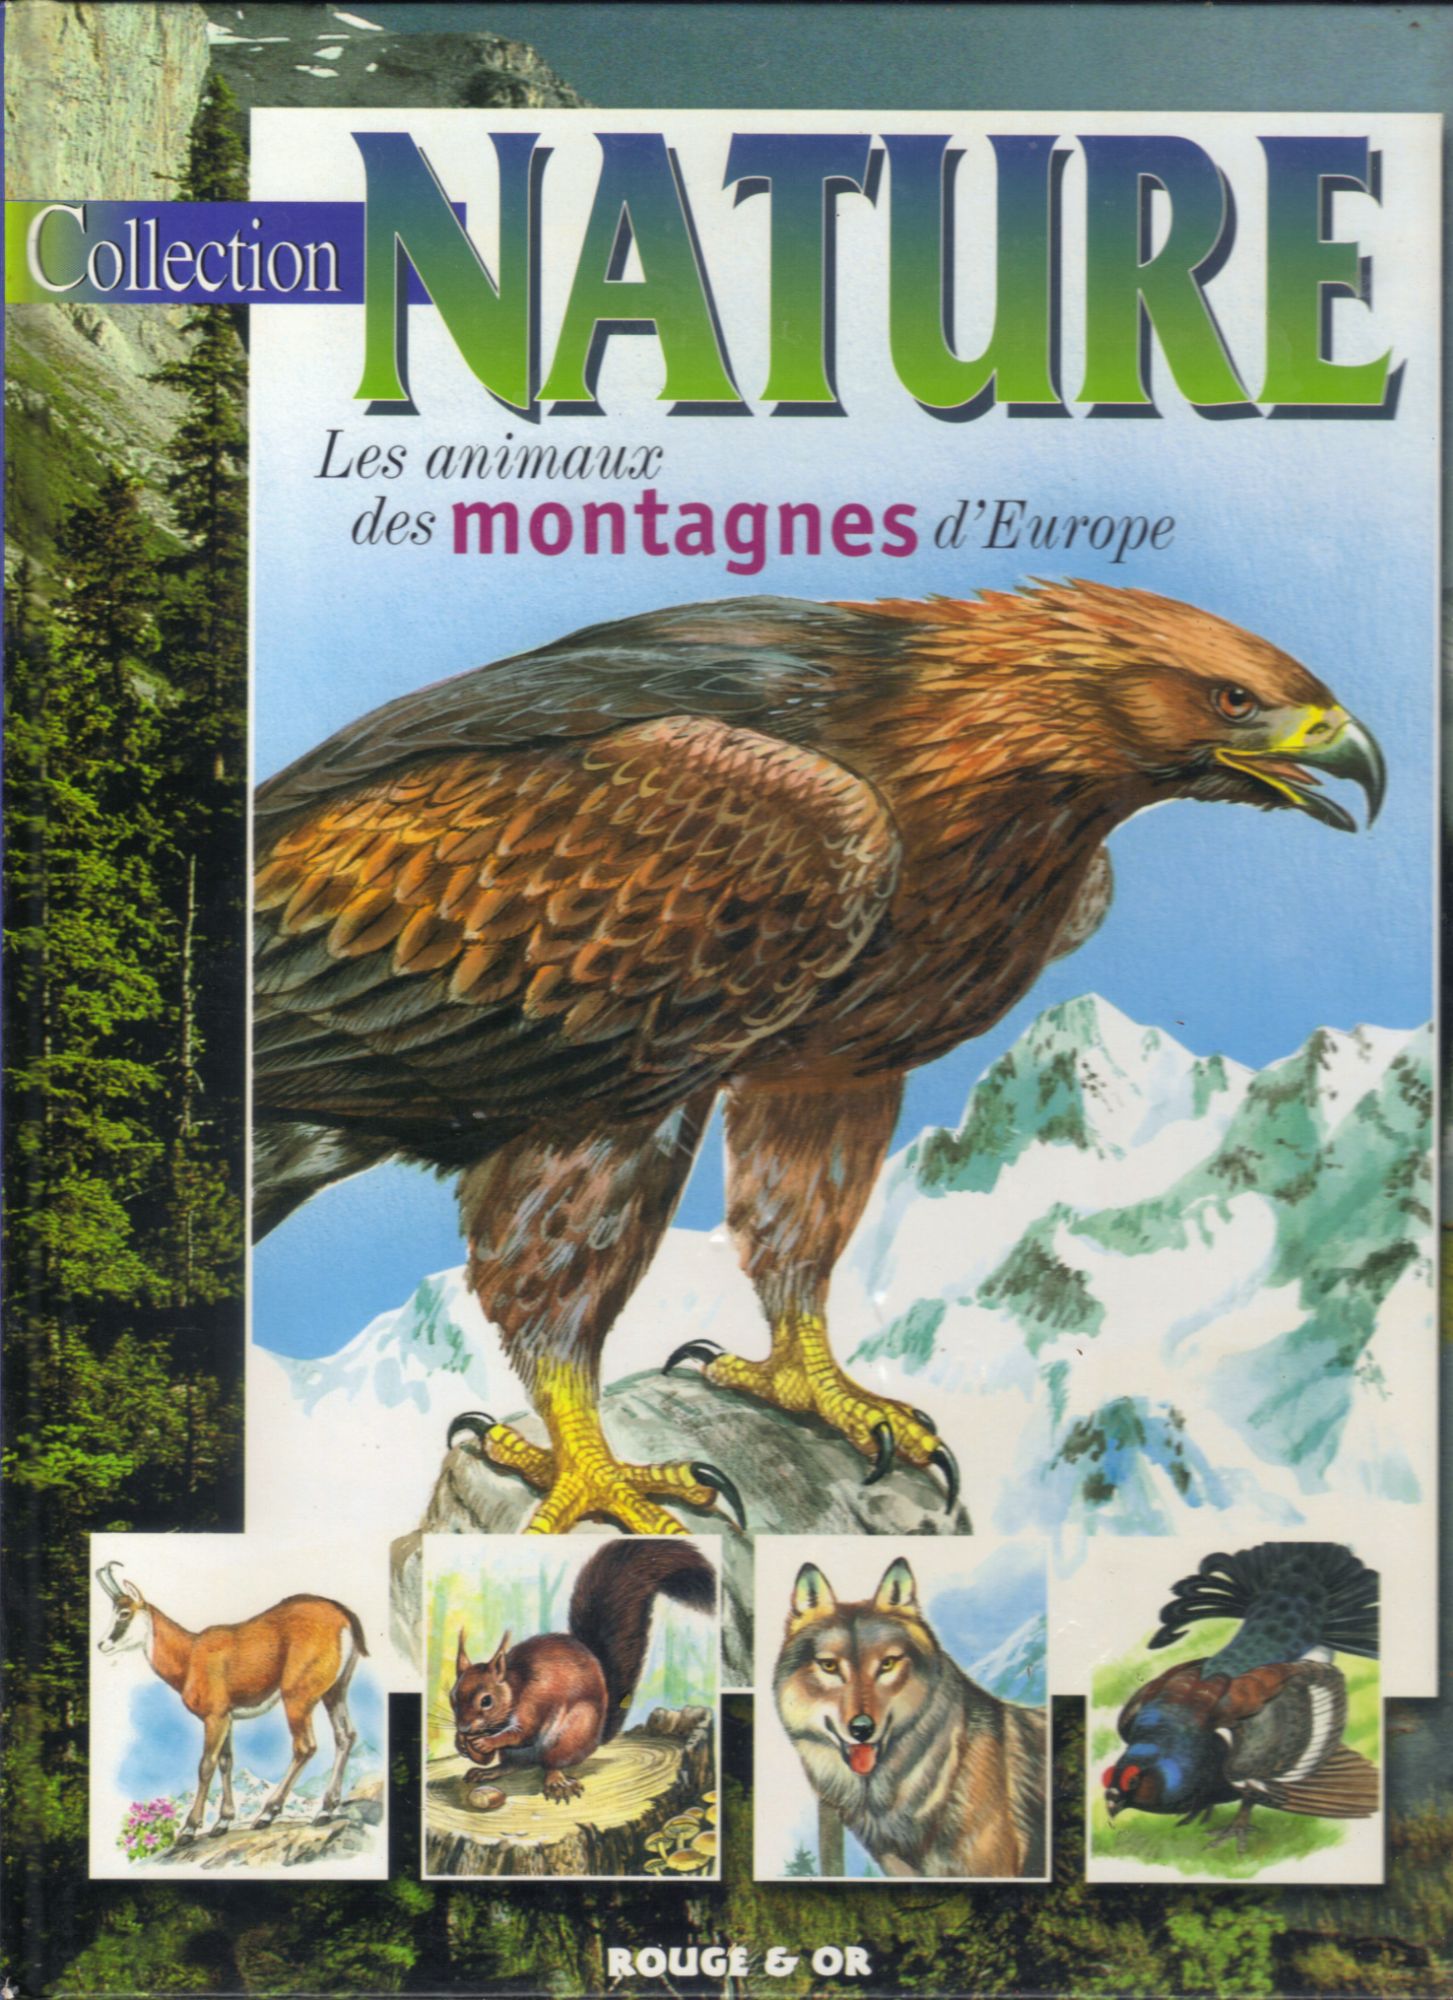 <a href="/node/12349">Les animaux des montagnes d'Europe</a>